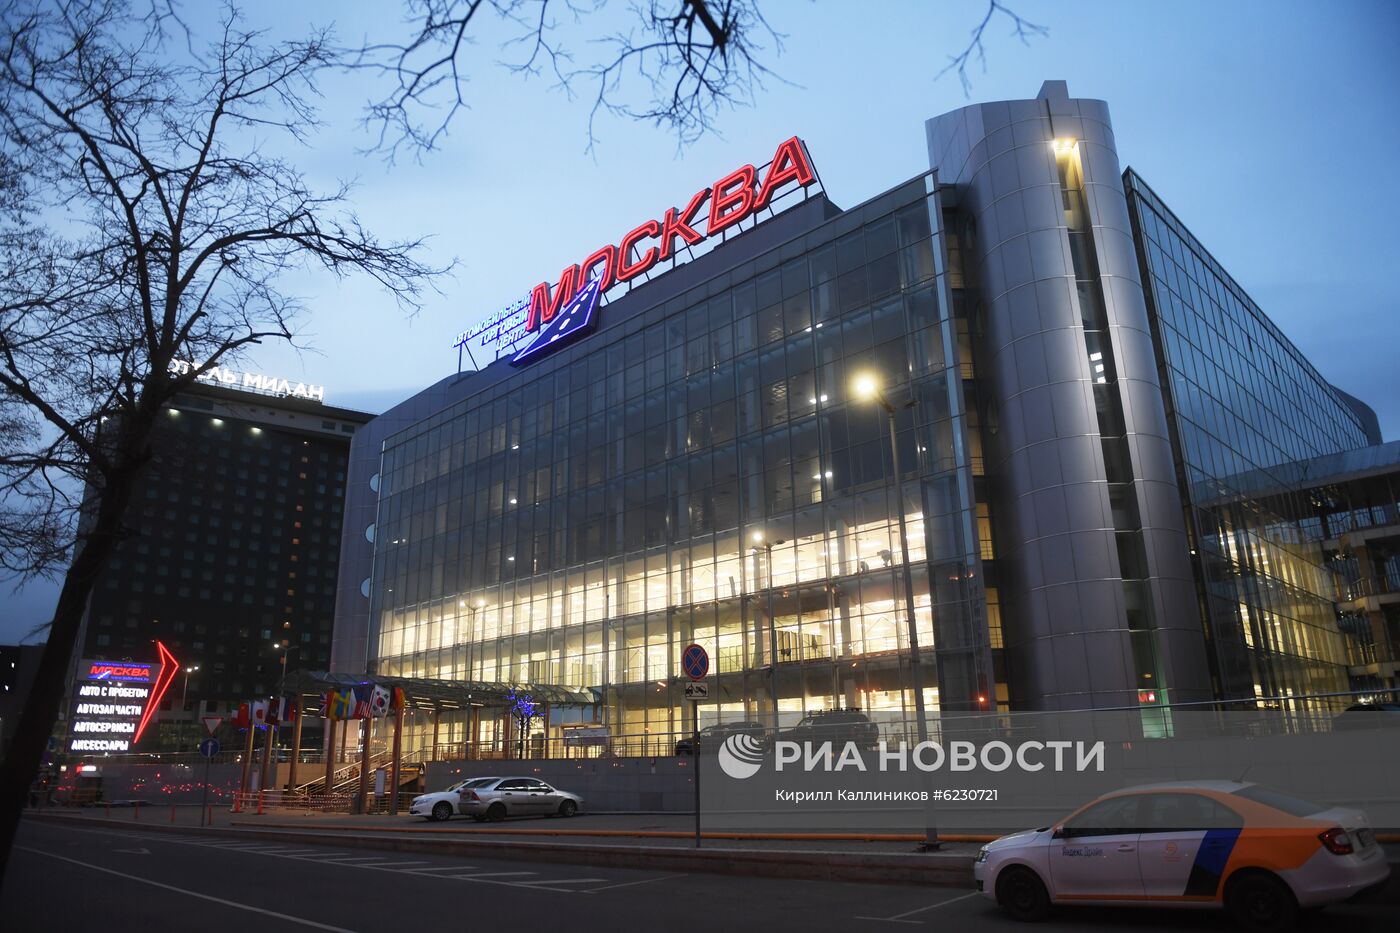 Автоцентр "Москва" перепрофилируют под госпиталь для больных с коронавирусом